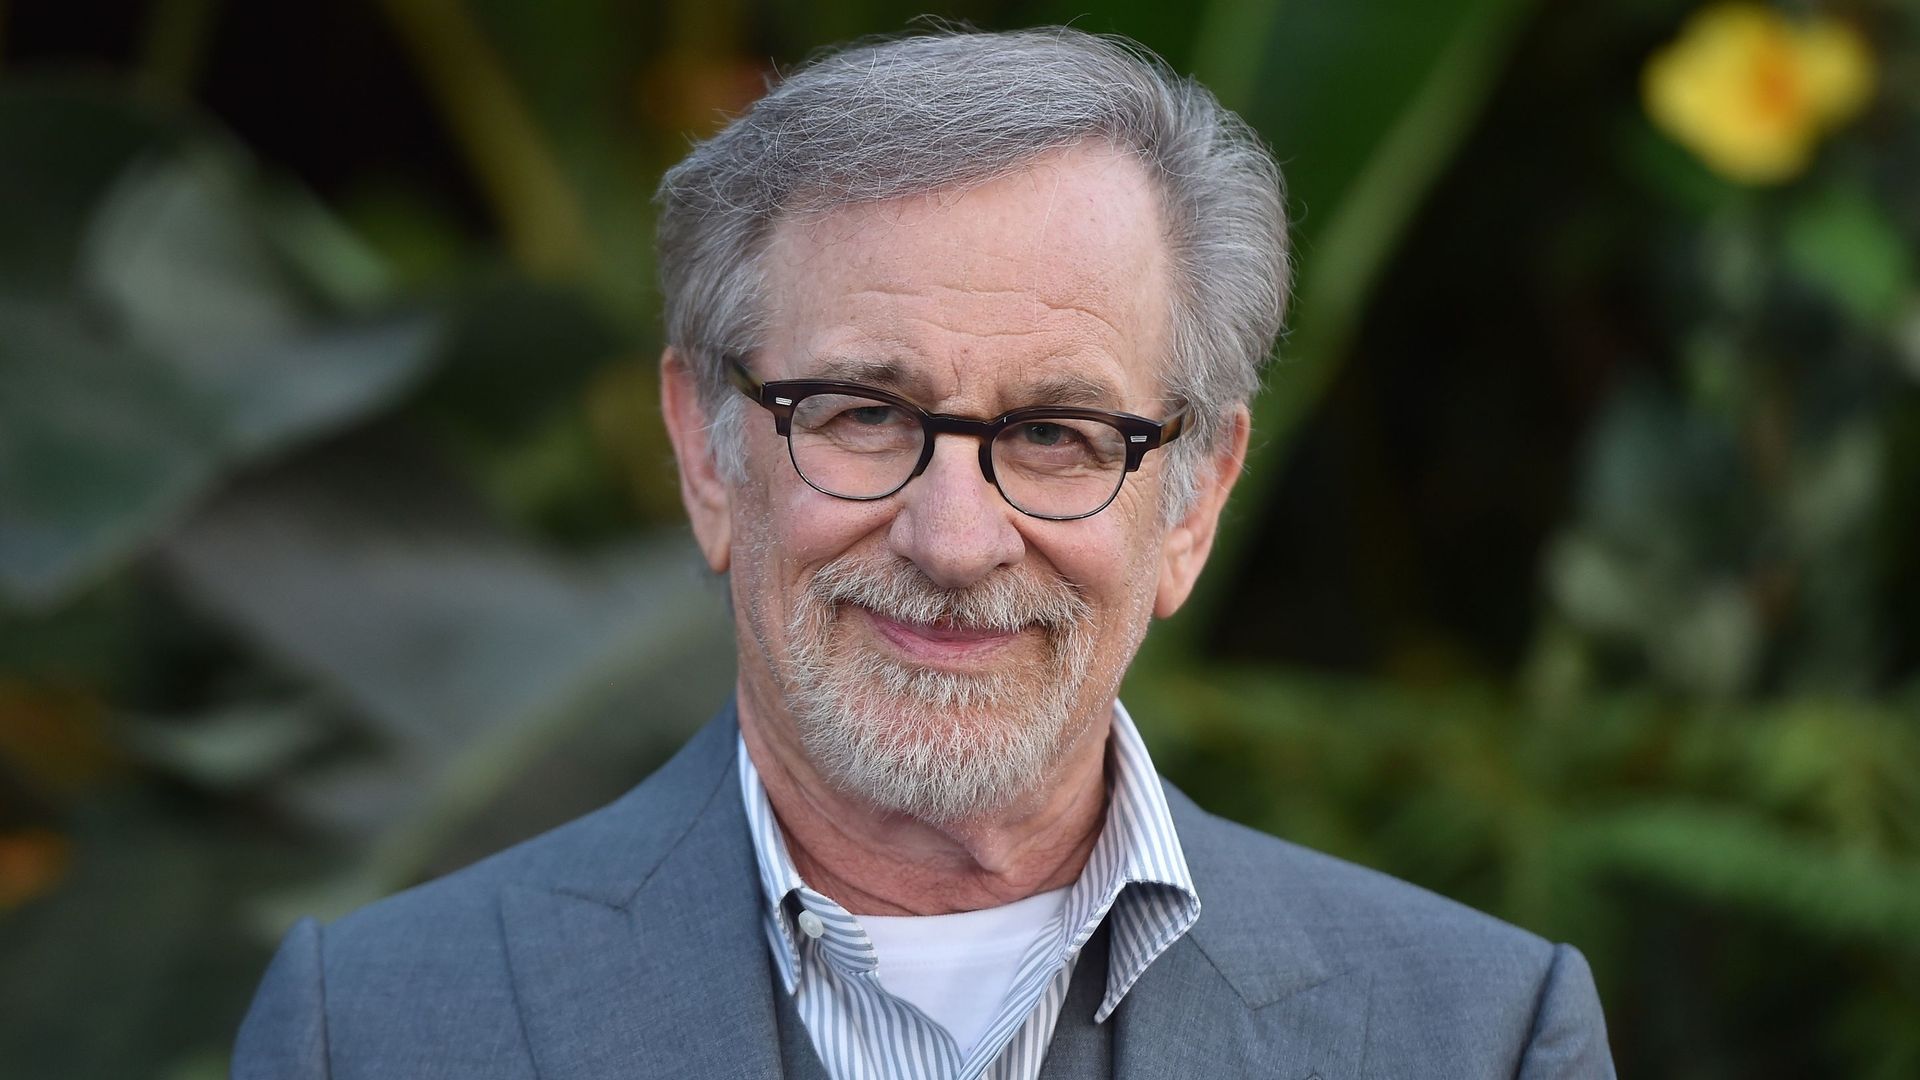 Steven Spielberg développe également un revival de sa série "Histoires fantastiques" ("Amazing Stories") pour le service de streaming Apple TV+.